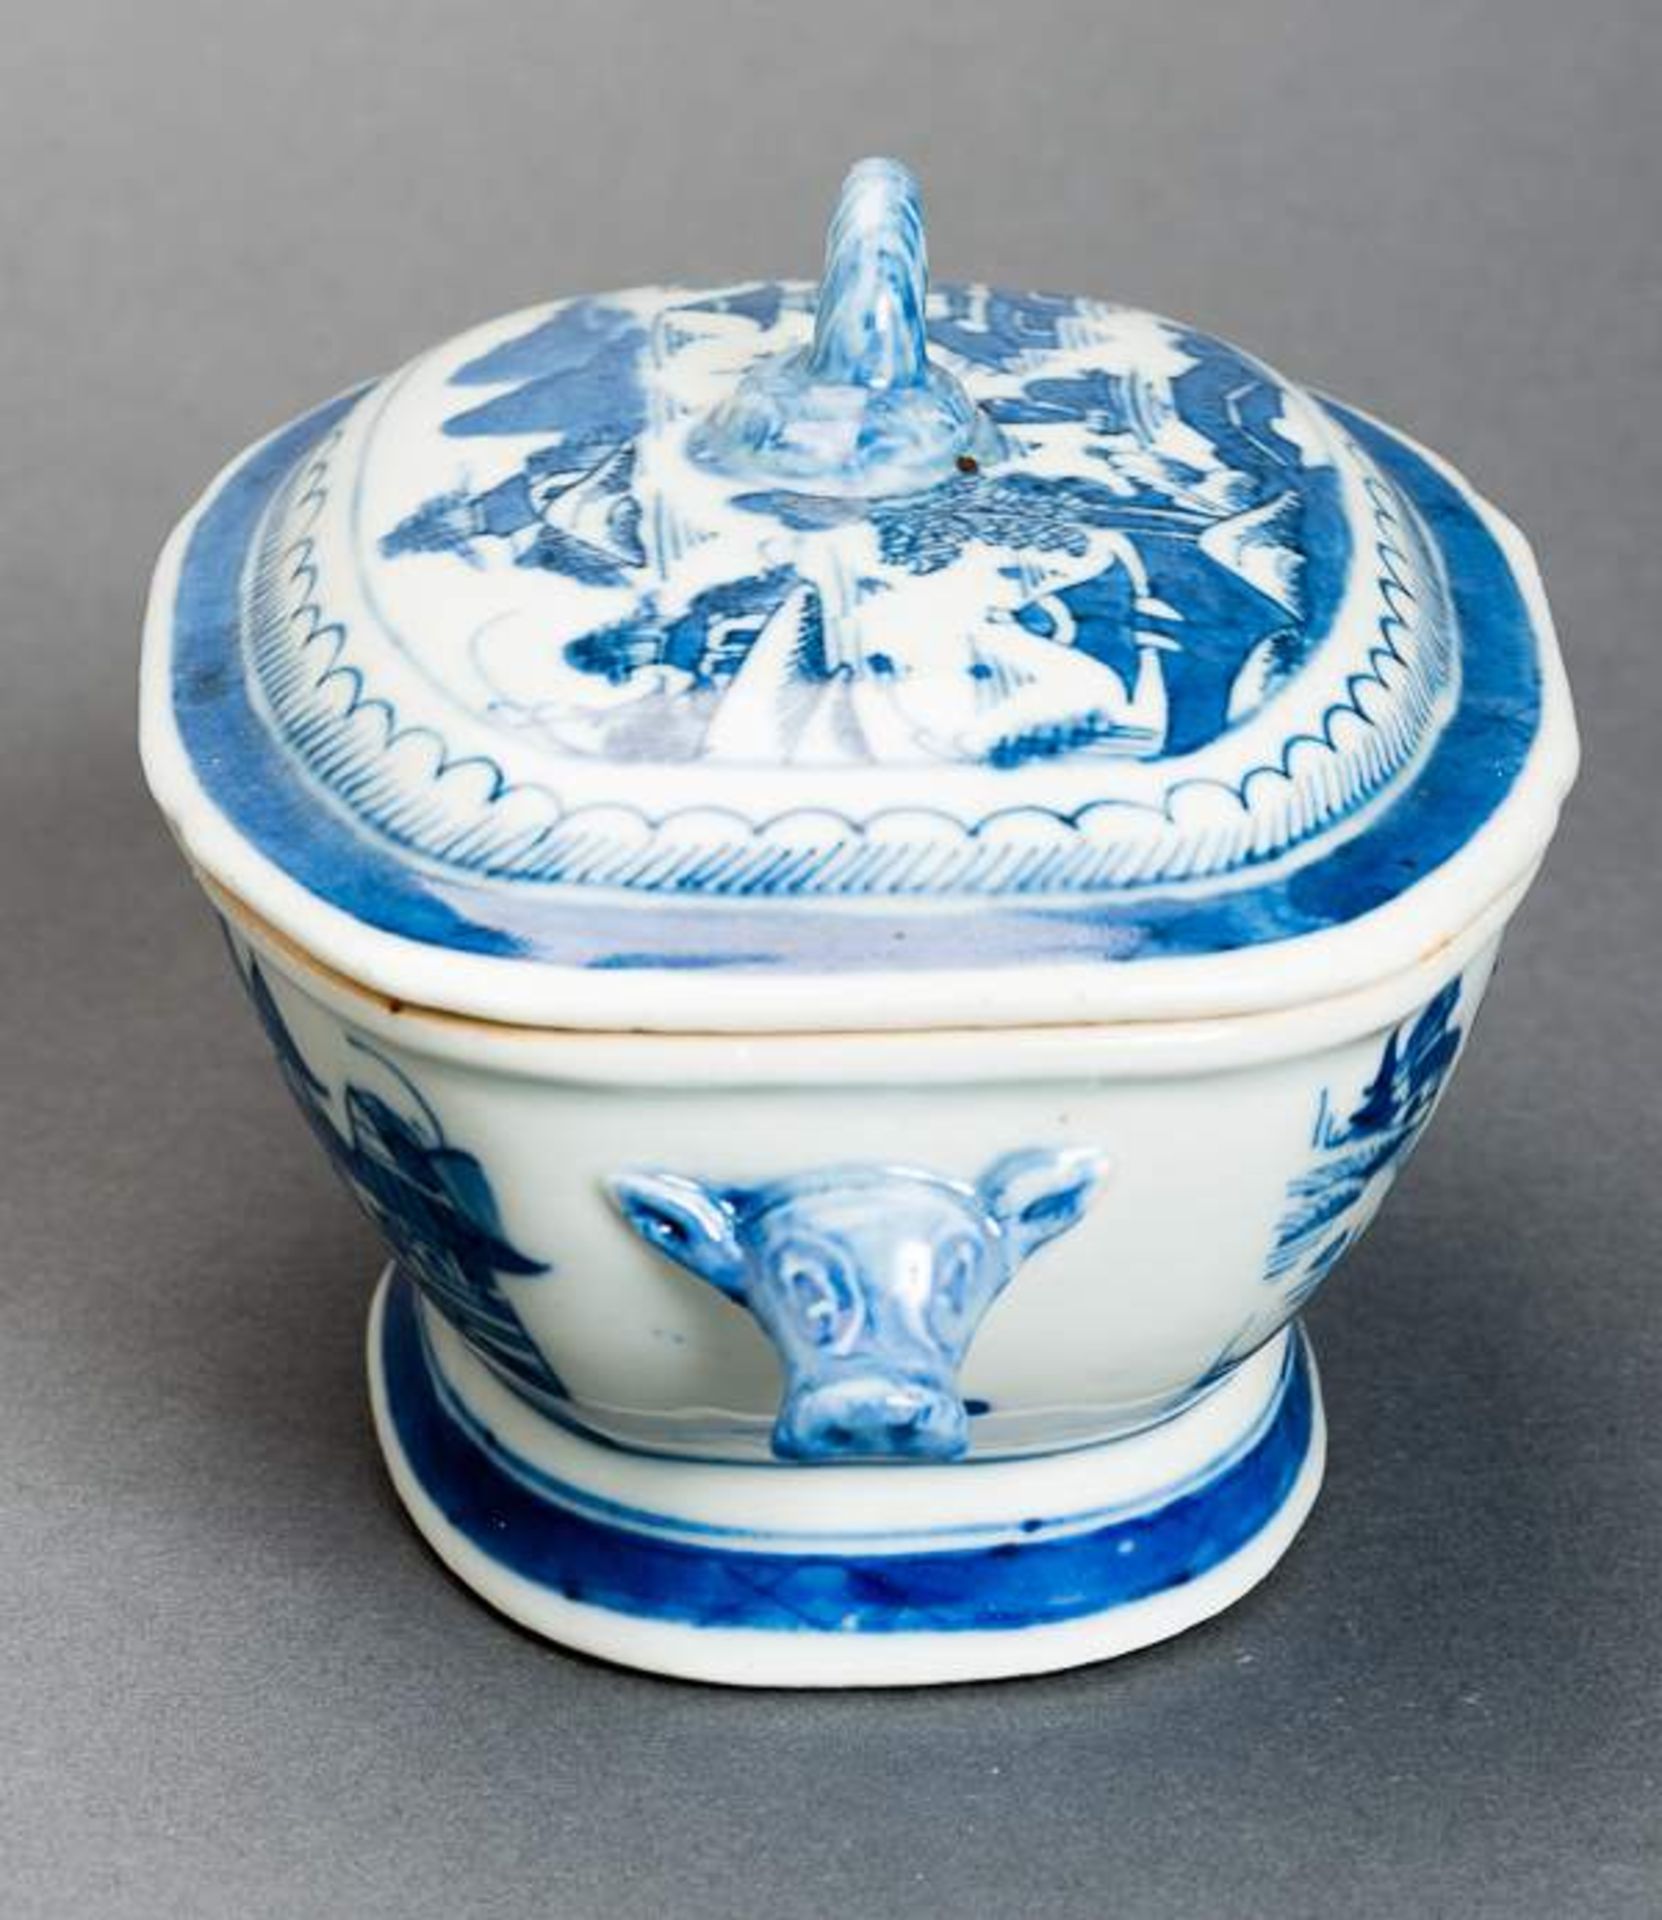 DECKELSCHALE Blauweiß-Porzellan. China, Qing-Dynastie, 19. Jh. Diese sehr ansprechende oval- - Image 9 of 11